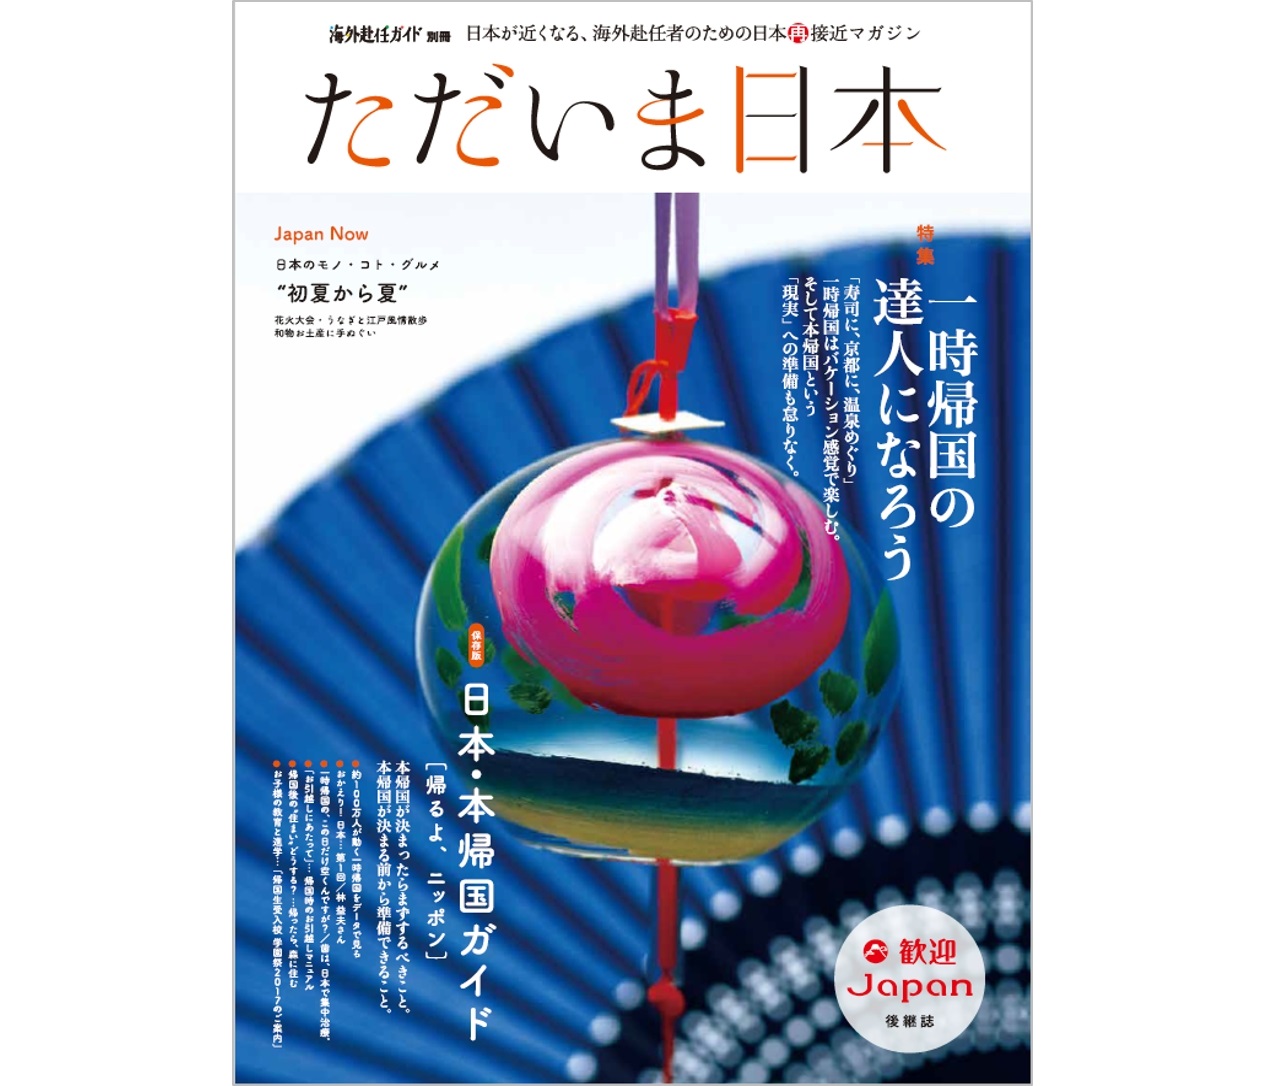 海外赴任者向け日本情報フリーマガジン「ただいま日本」が創刊